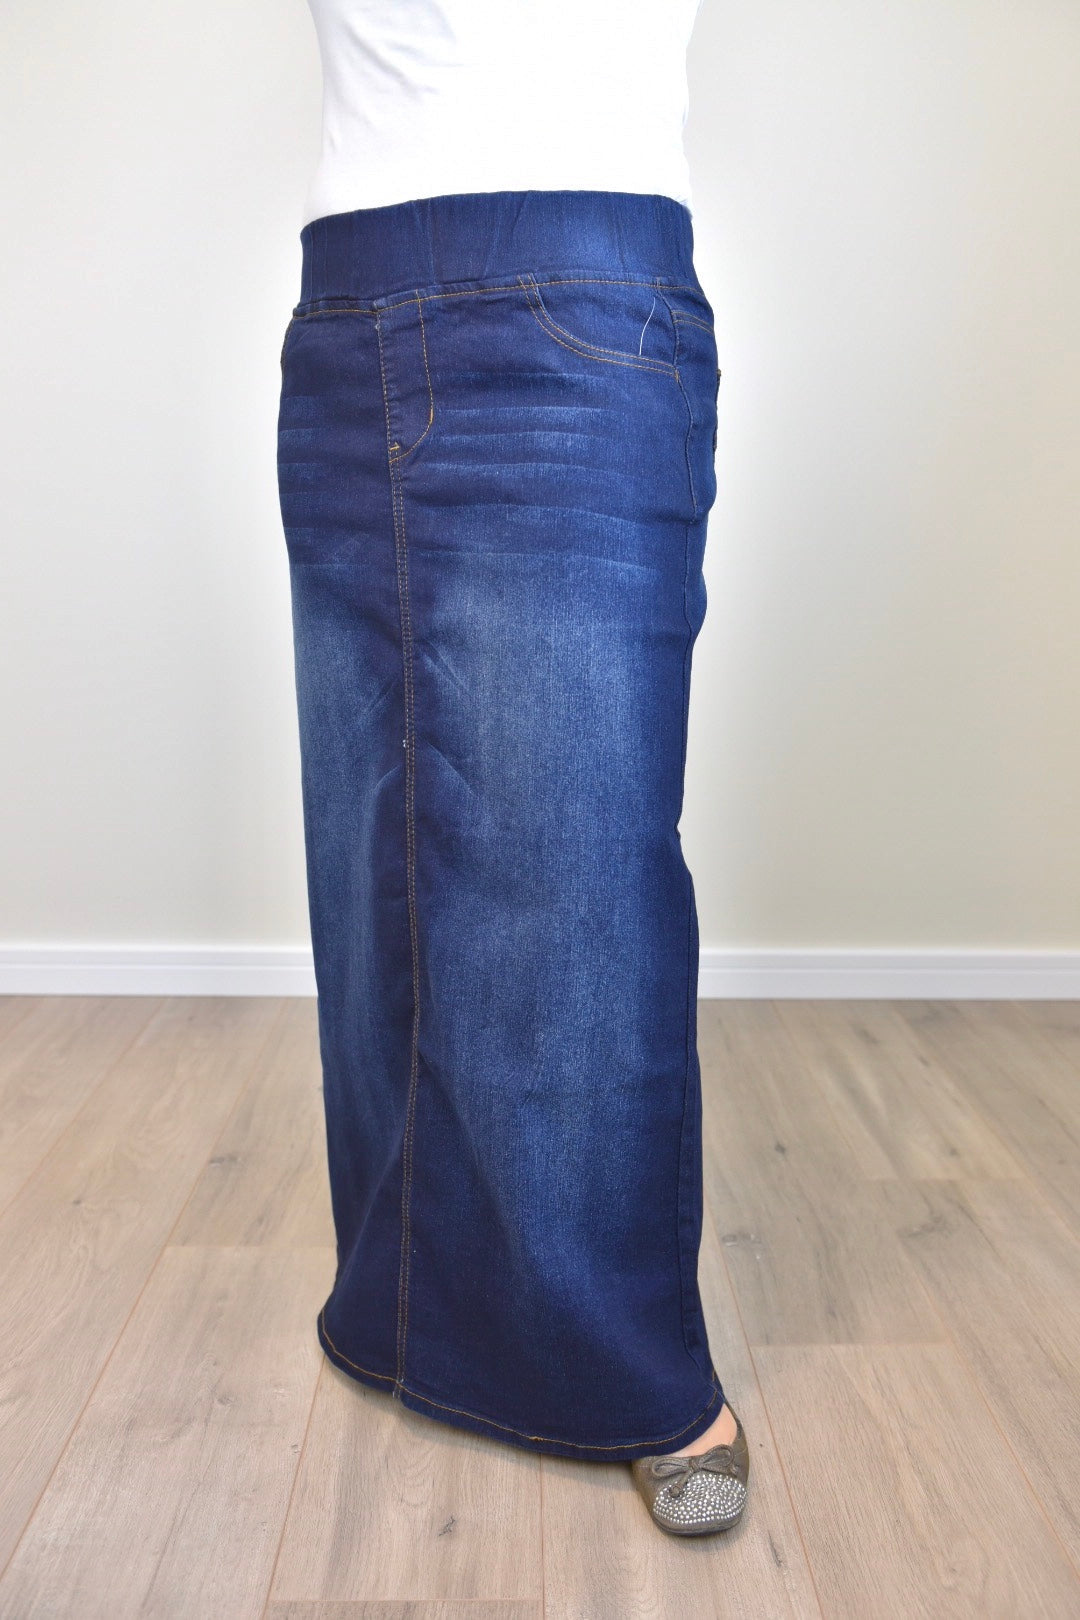 "Harper" Dark Indigo Long Straight Denim Skirt With Elastic Waistband - Ladies & Lavender Boutique